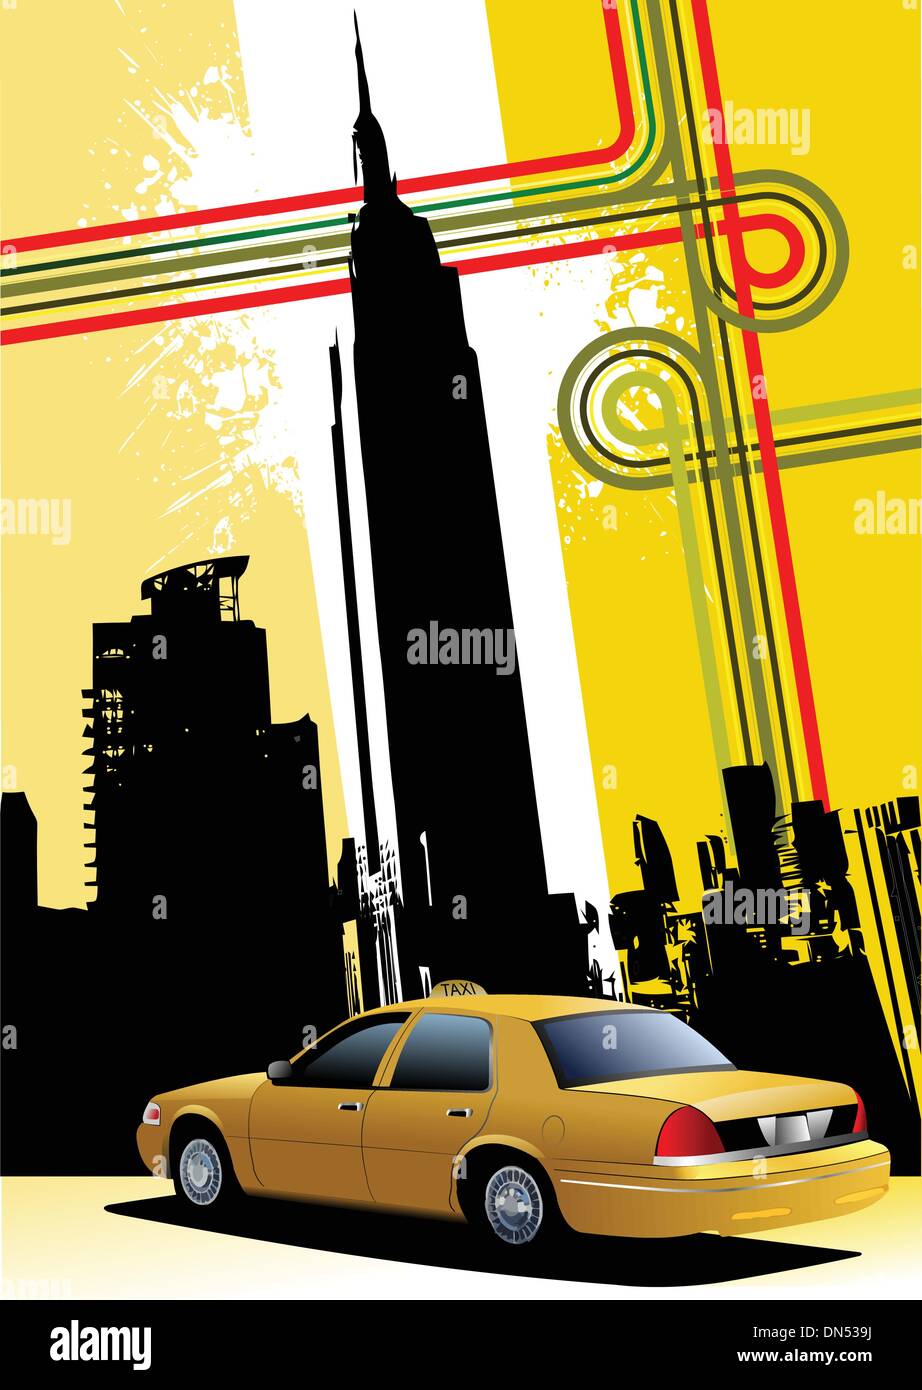 Abdeckung für Broschüre mit New York und dem Taxi Cab Bilder Stock Vektor